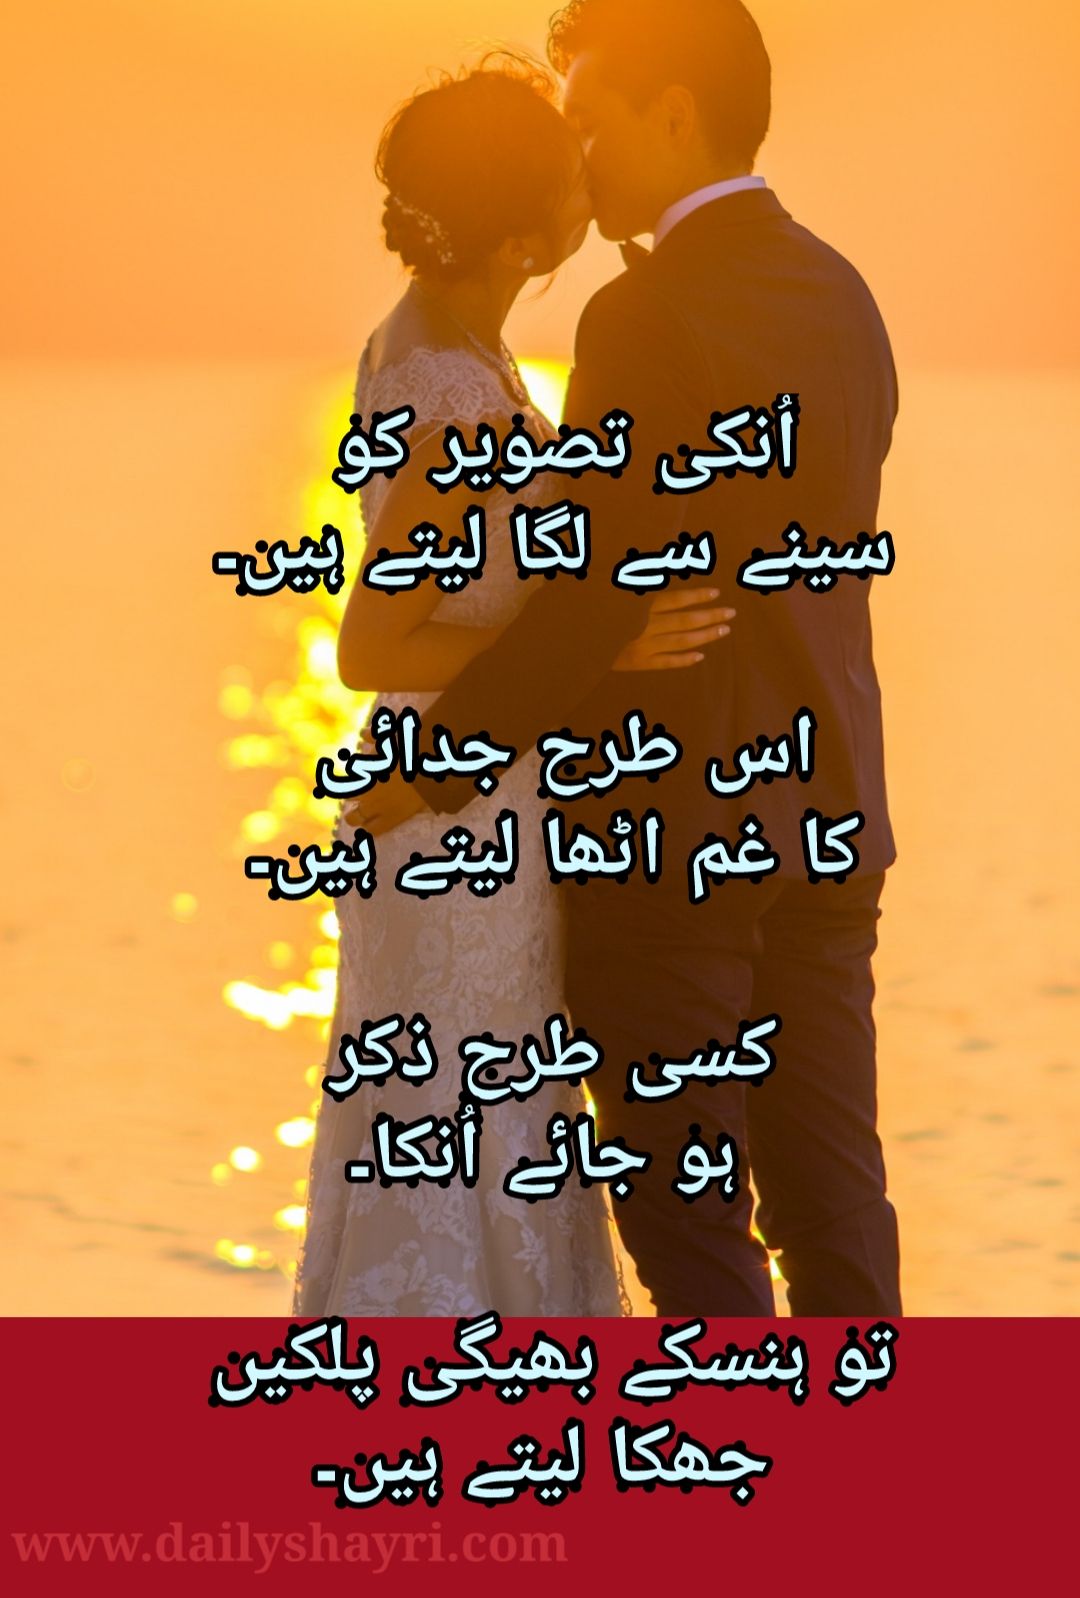 In whatsapp poetry best dating 2022 status urdu ever 